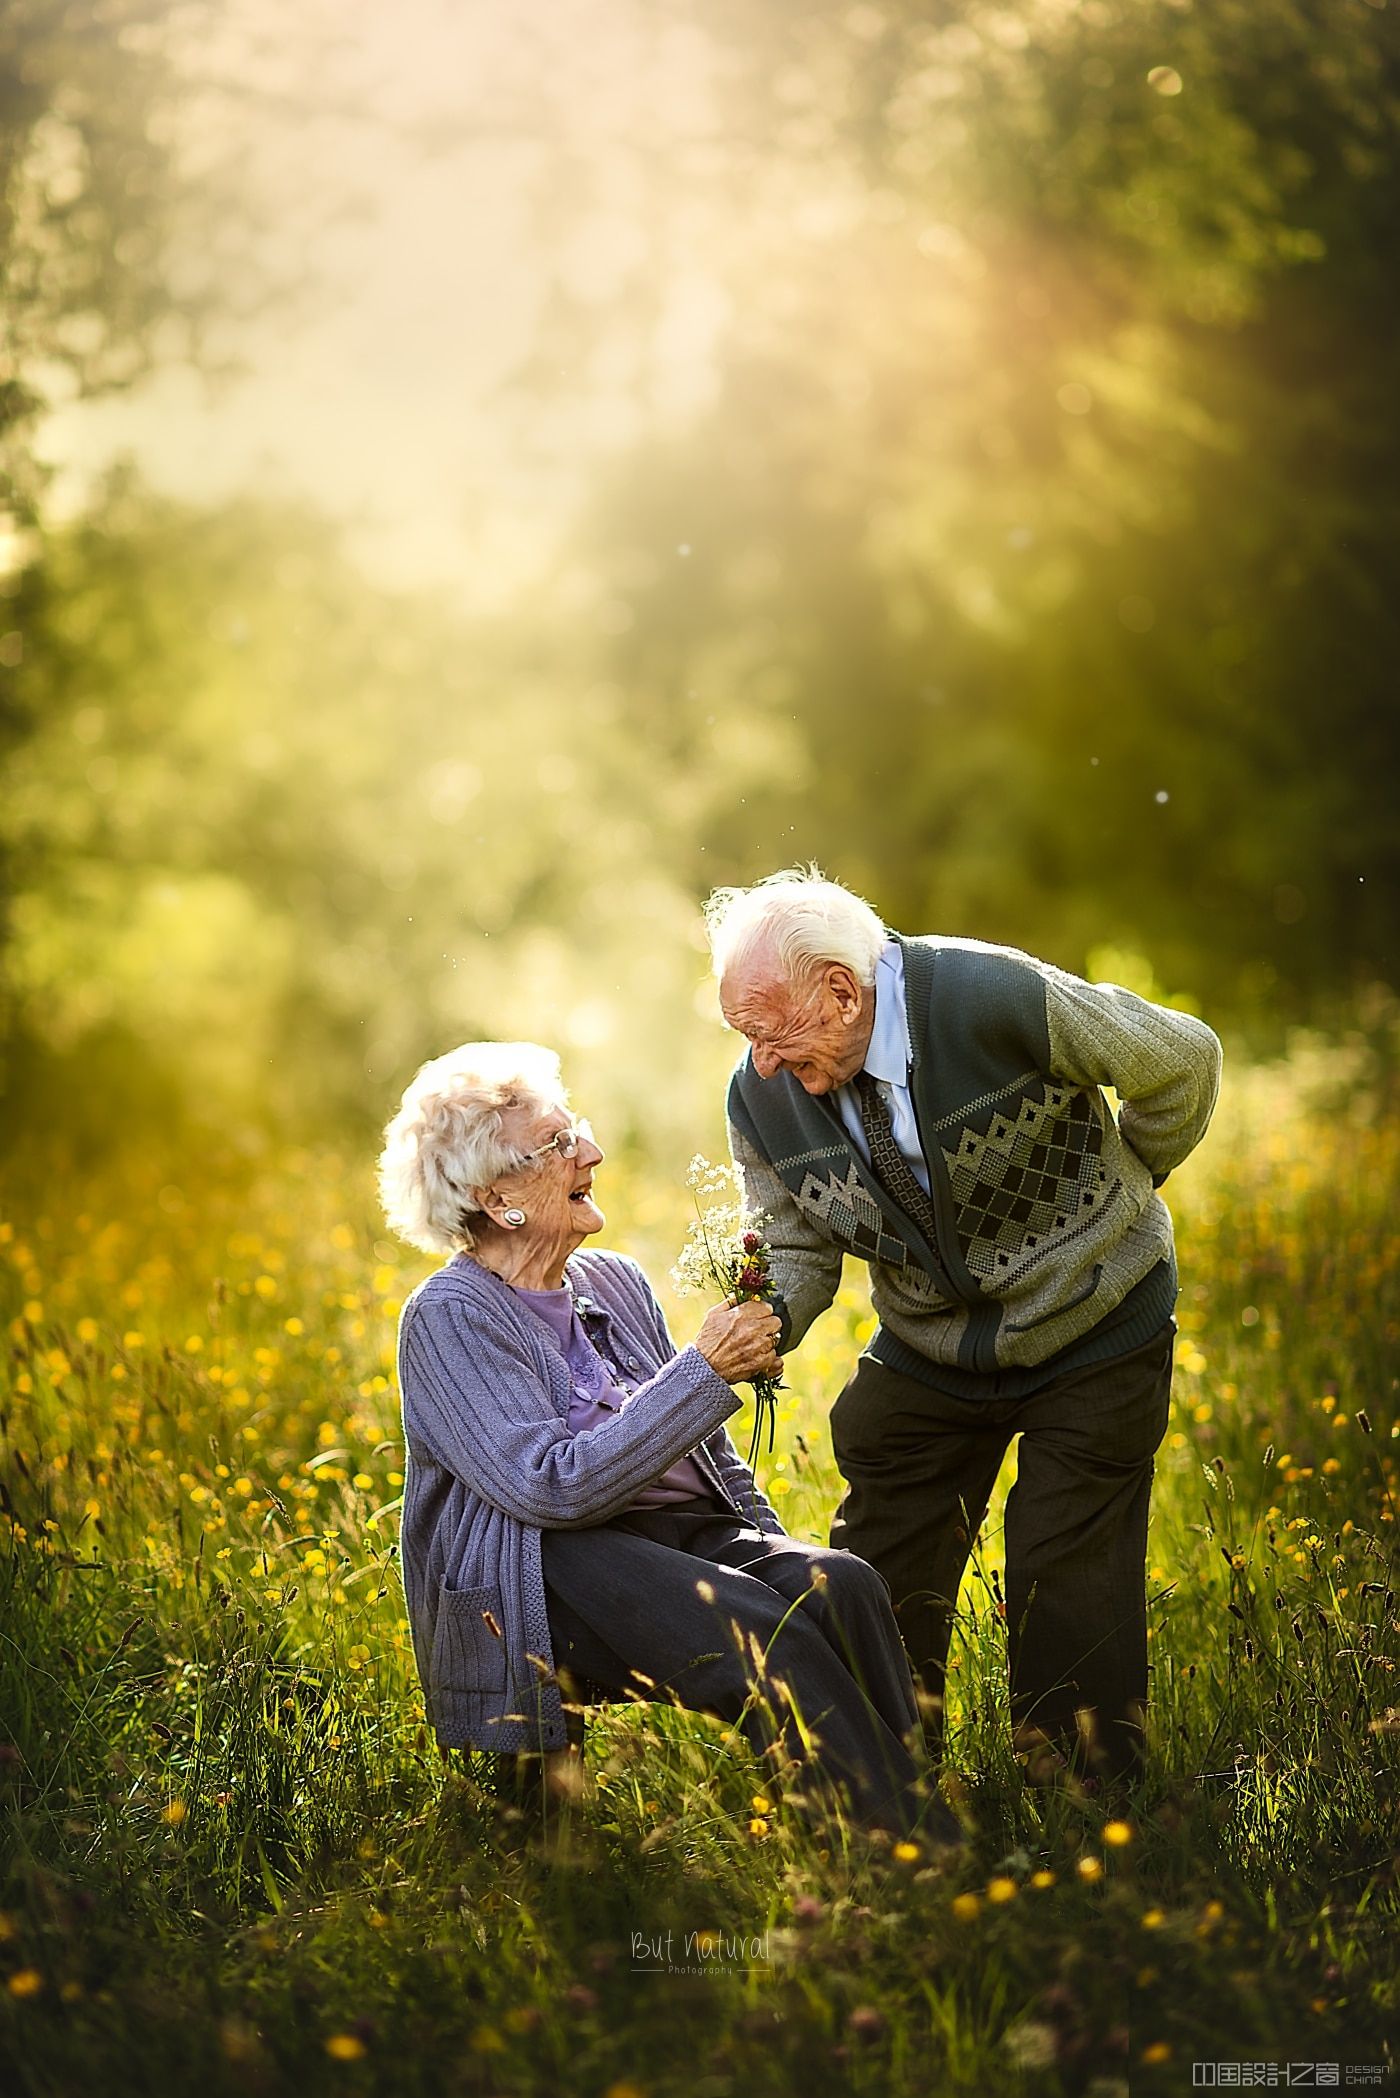 美丽而浪漫的照片,是一首老年夫妇永恒的爱情插曲